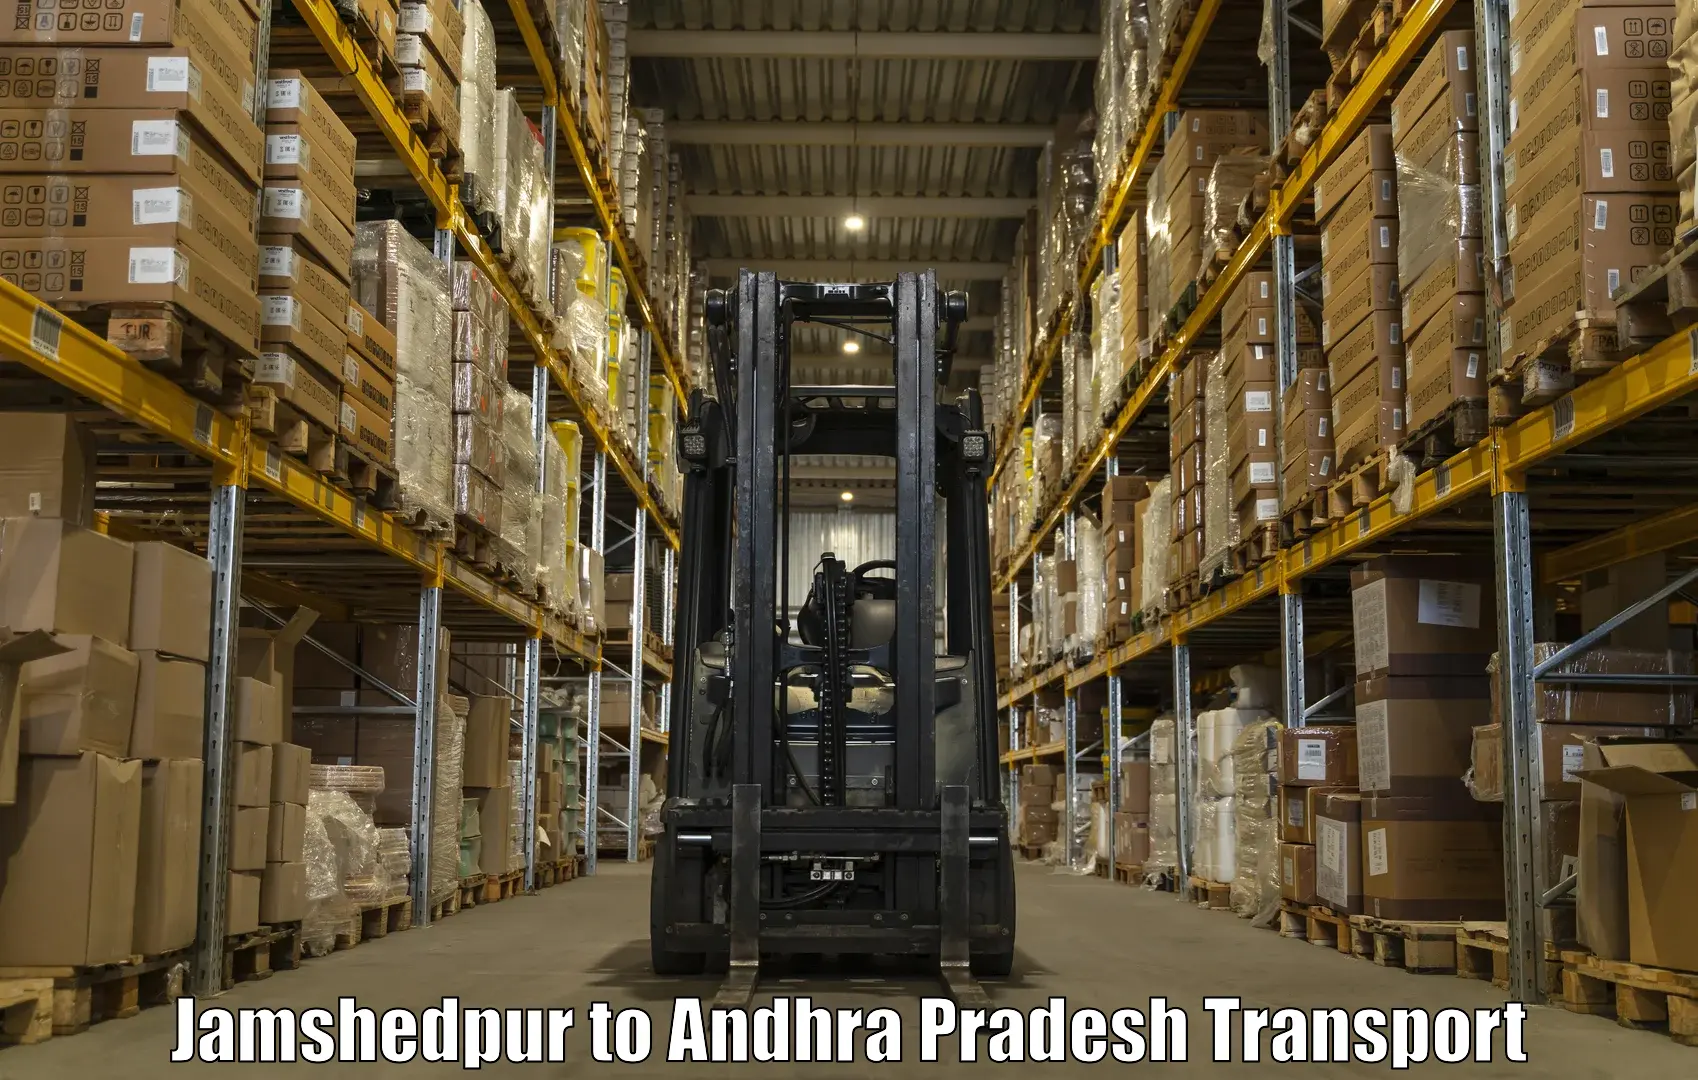 Vehicle parcel service Jamshedpur to Visakhapatnam Port